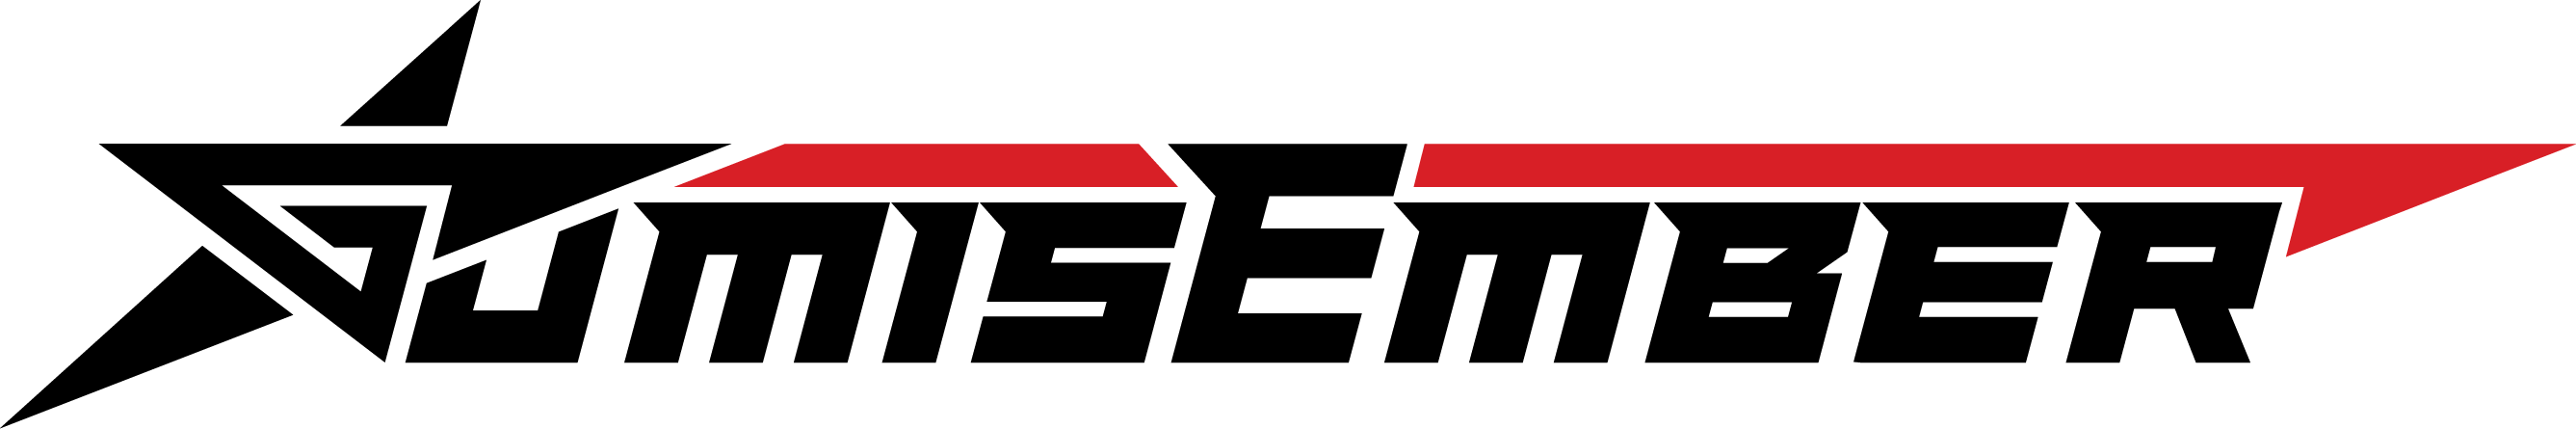 Gumisember logo